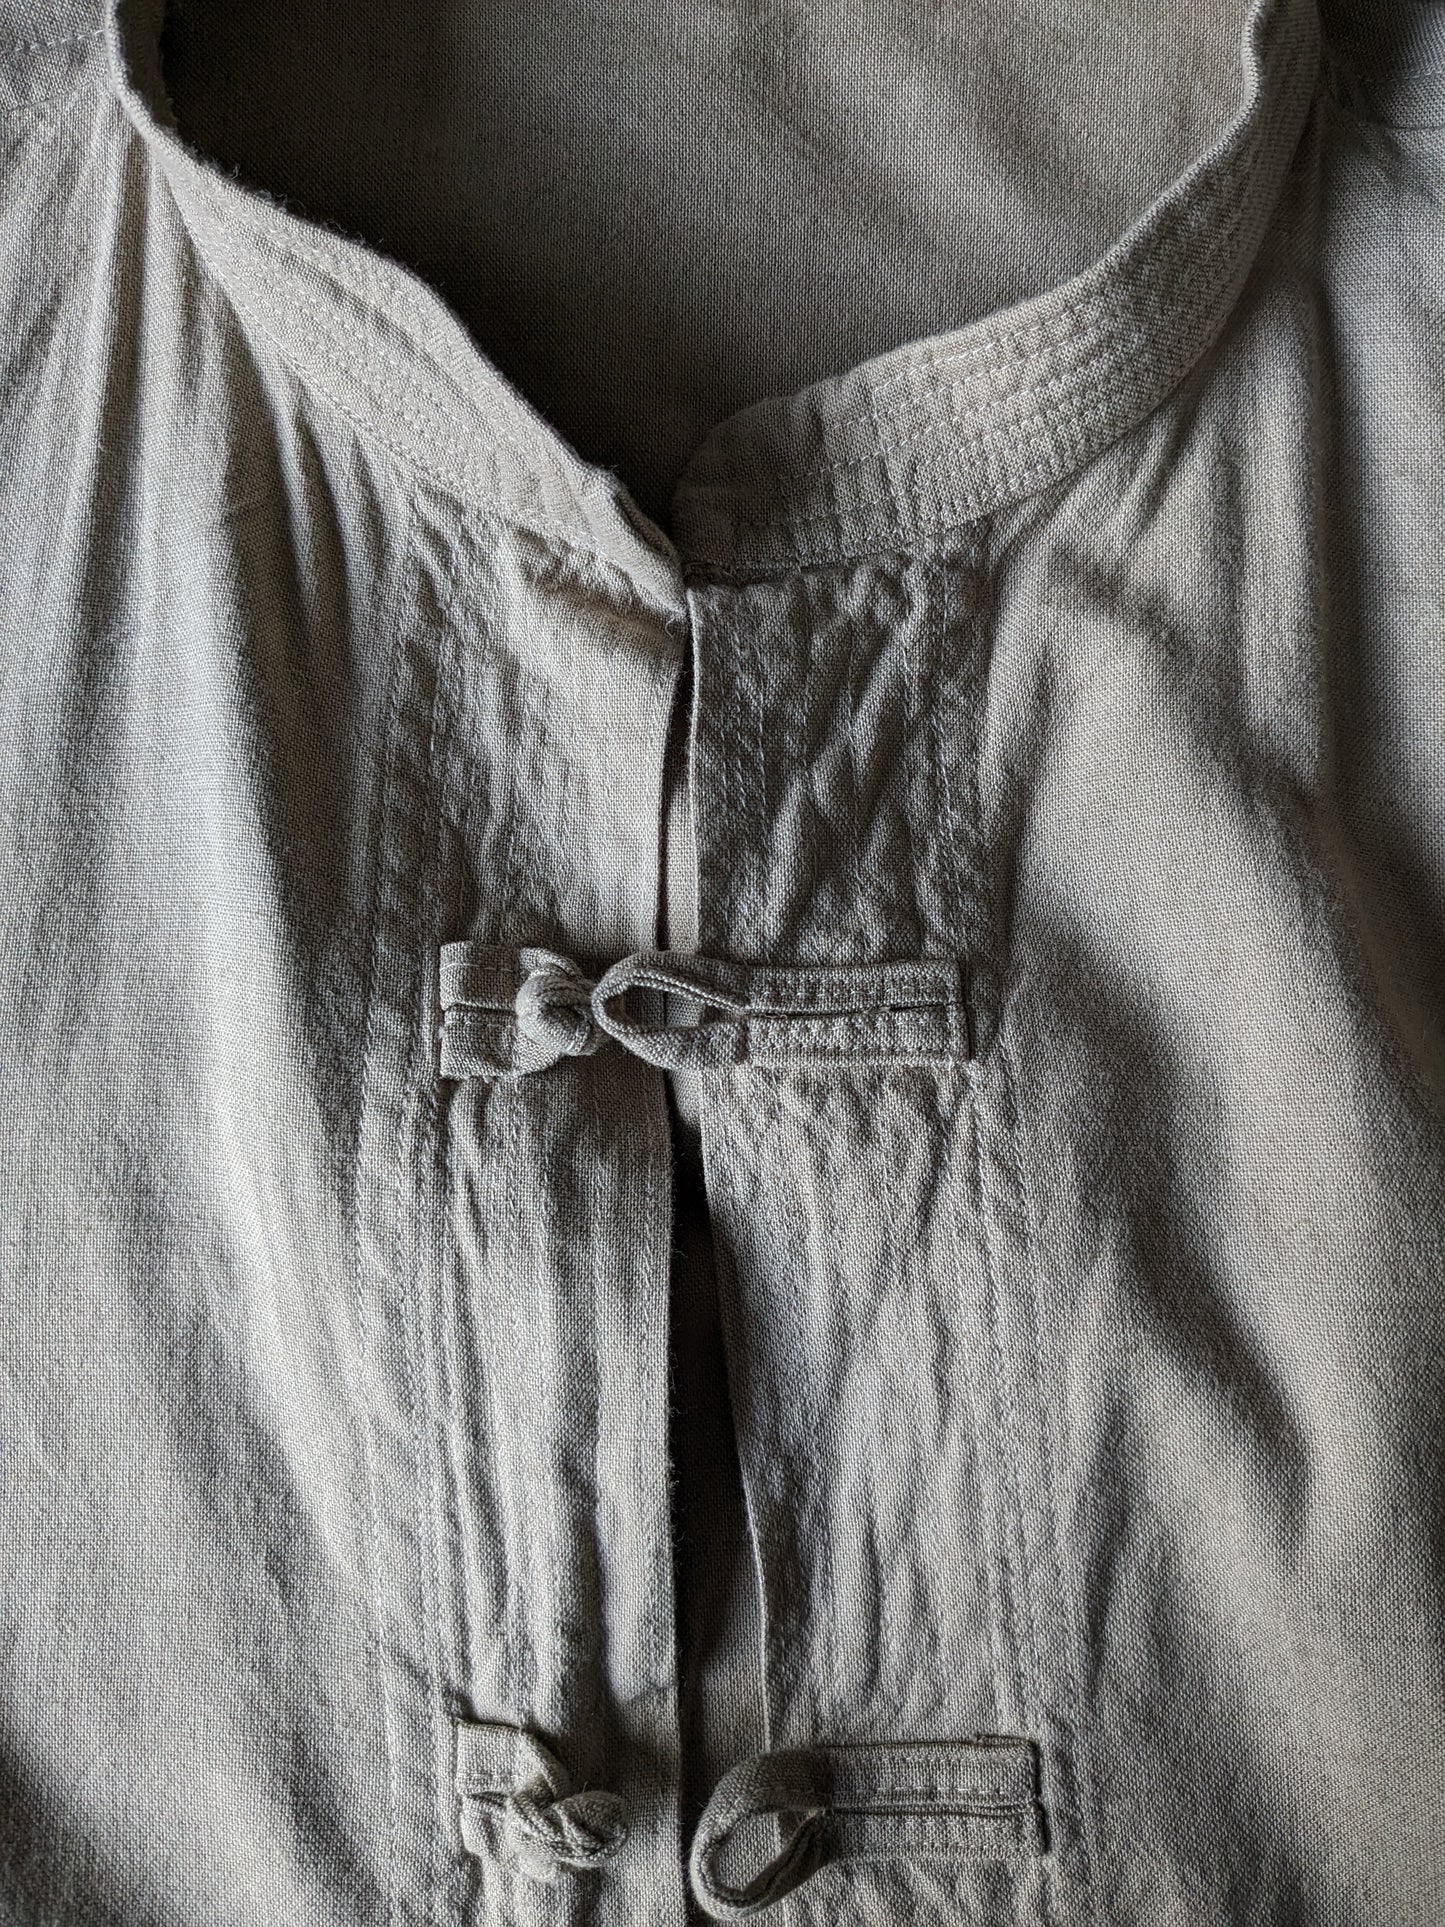 Chemise vintage avec boutons en tissu et collier mao / surélevé / agriculteur. Coloré beige. Taille 2xl / xxl.